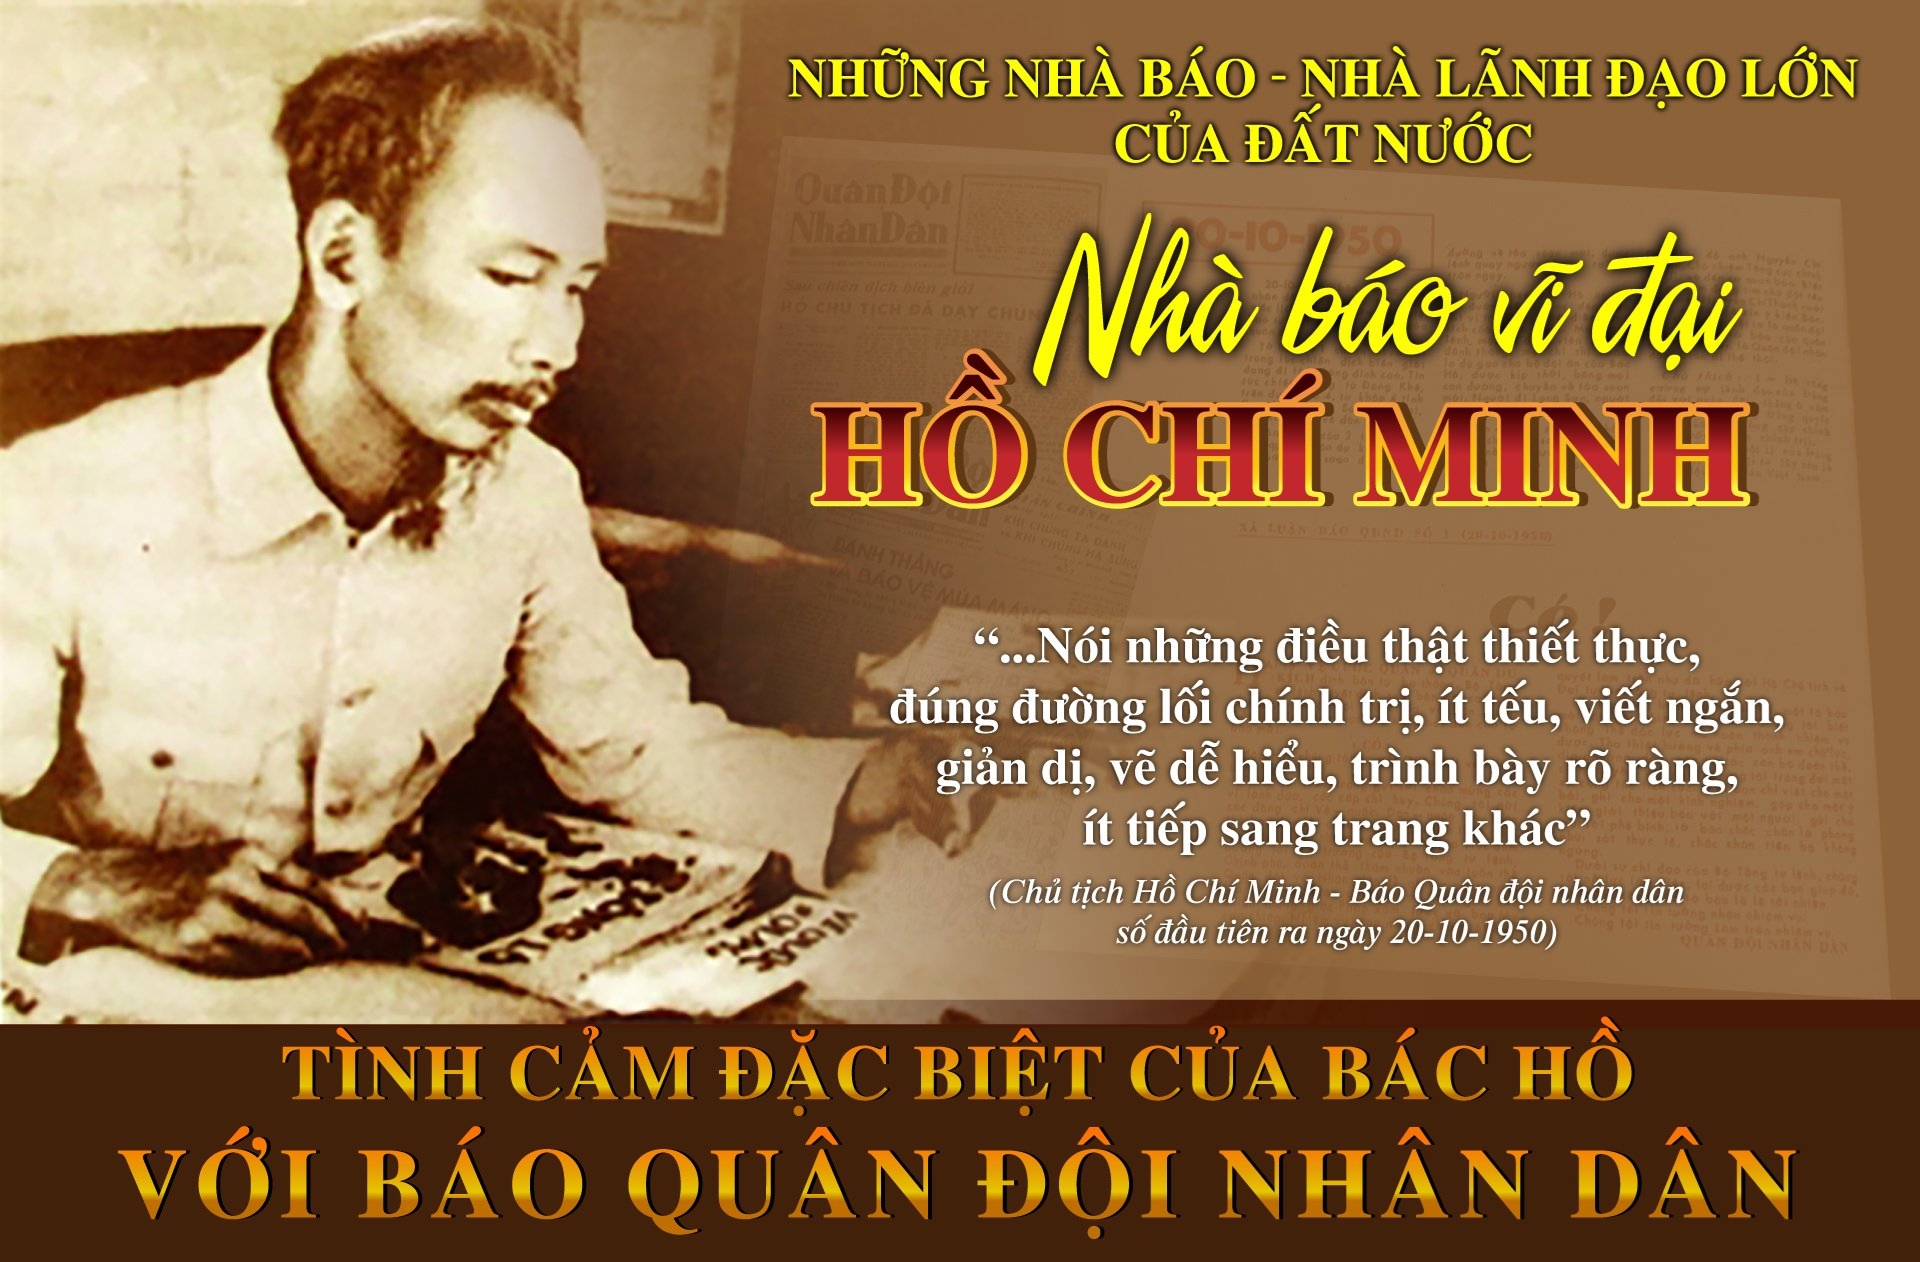 Bác Hồ là nhân vật vô cùng đặc biệt của dân tộc Việt Nam. Hình ảnh của ông luôn gợi lên niềm tự hào và tình cảm trong lòng người dân. Hãy xem hình ảnh liên quan để tìm hiểu thêm về Bác và những cống hiến của ông cho đất nước.